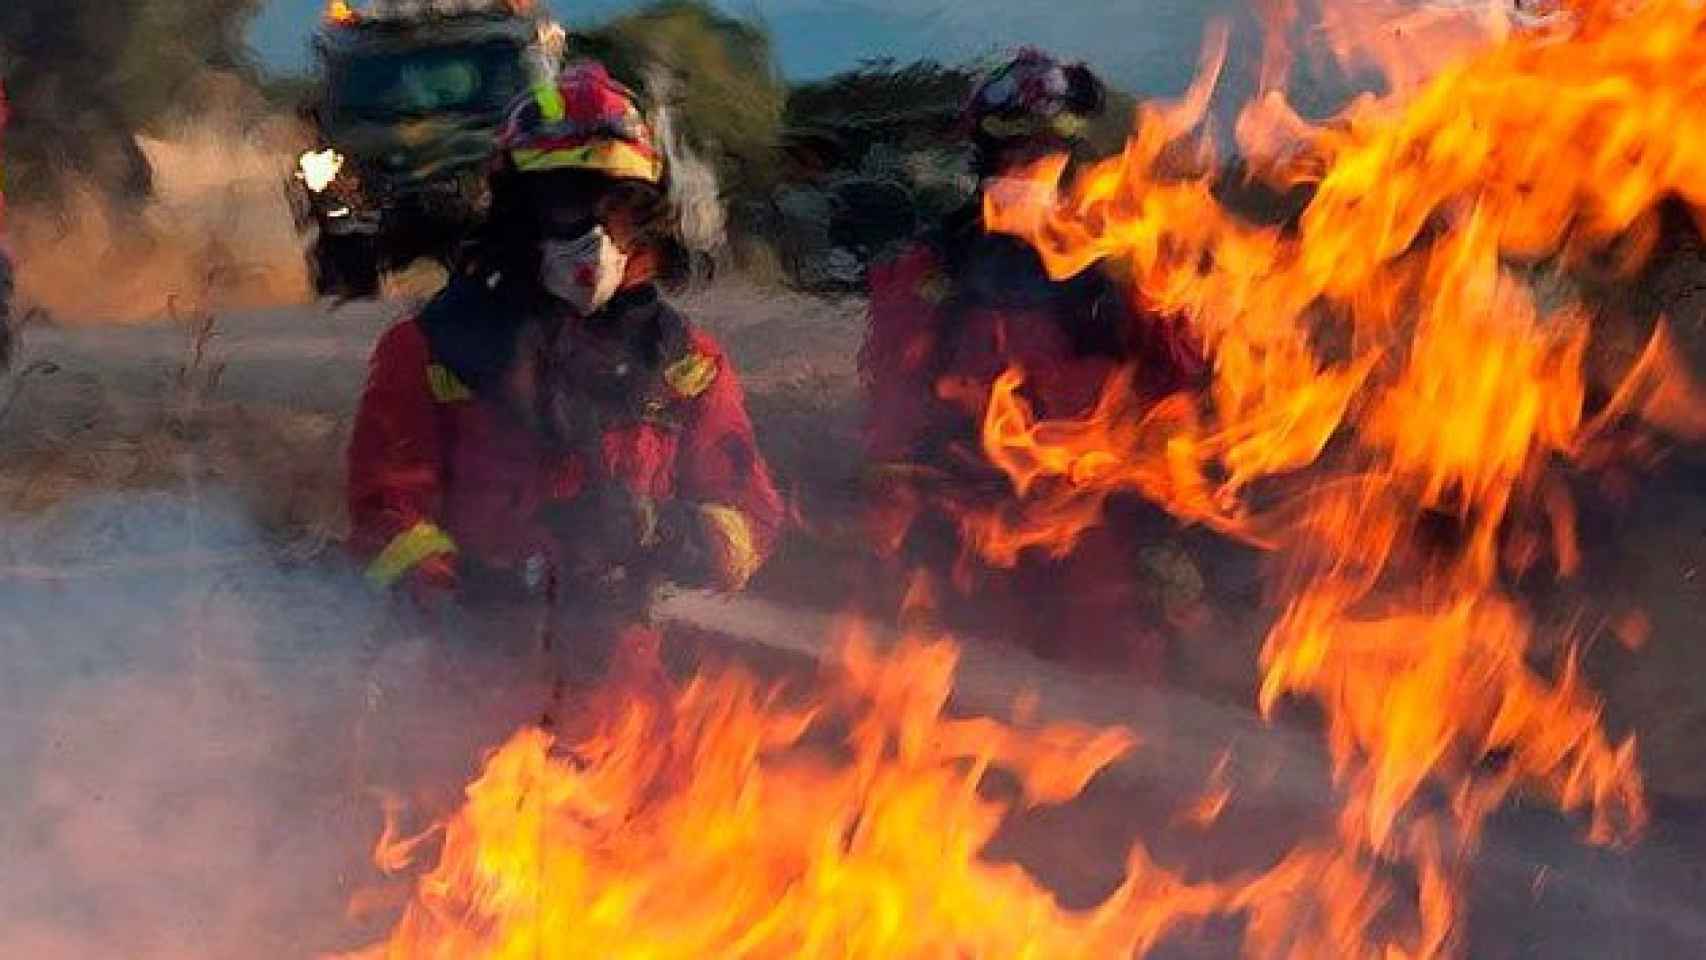 Un bombero de la UME durante las labores de extinción de un fuego / CG